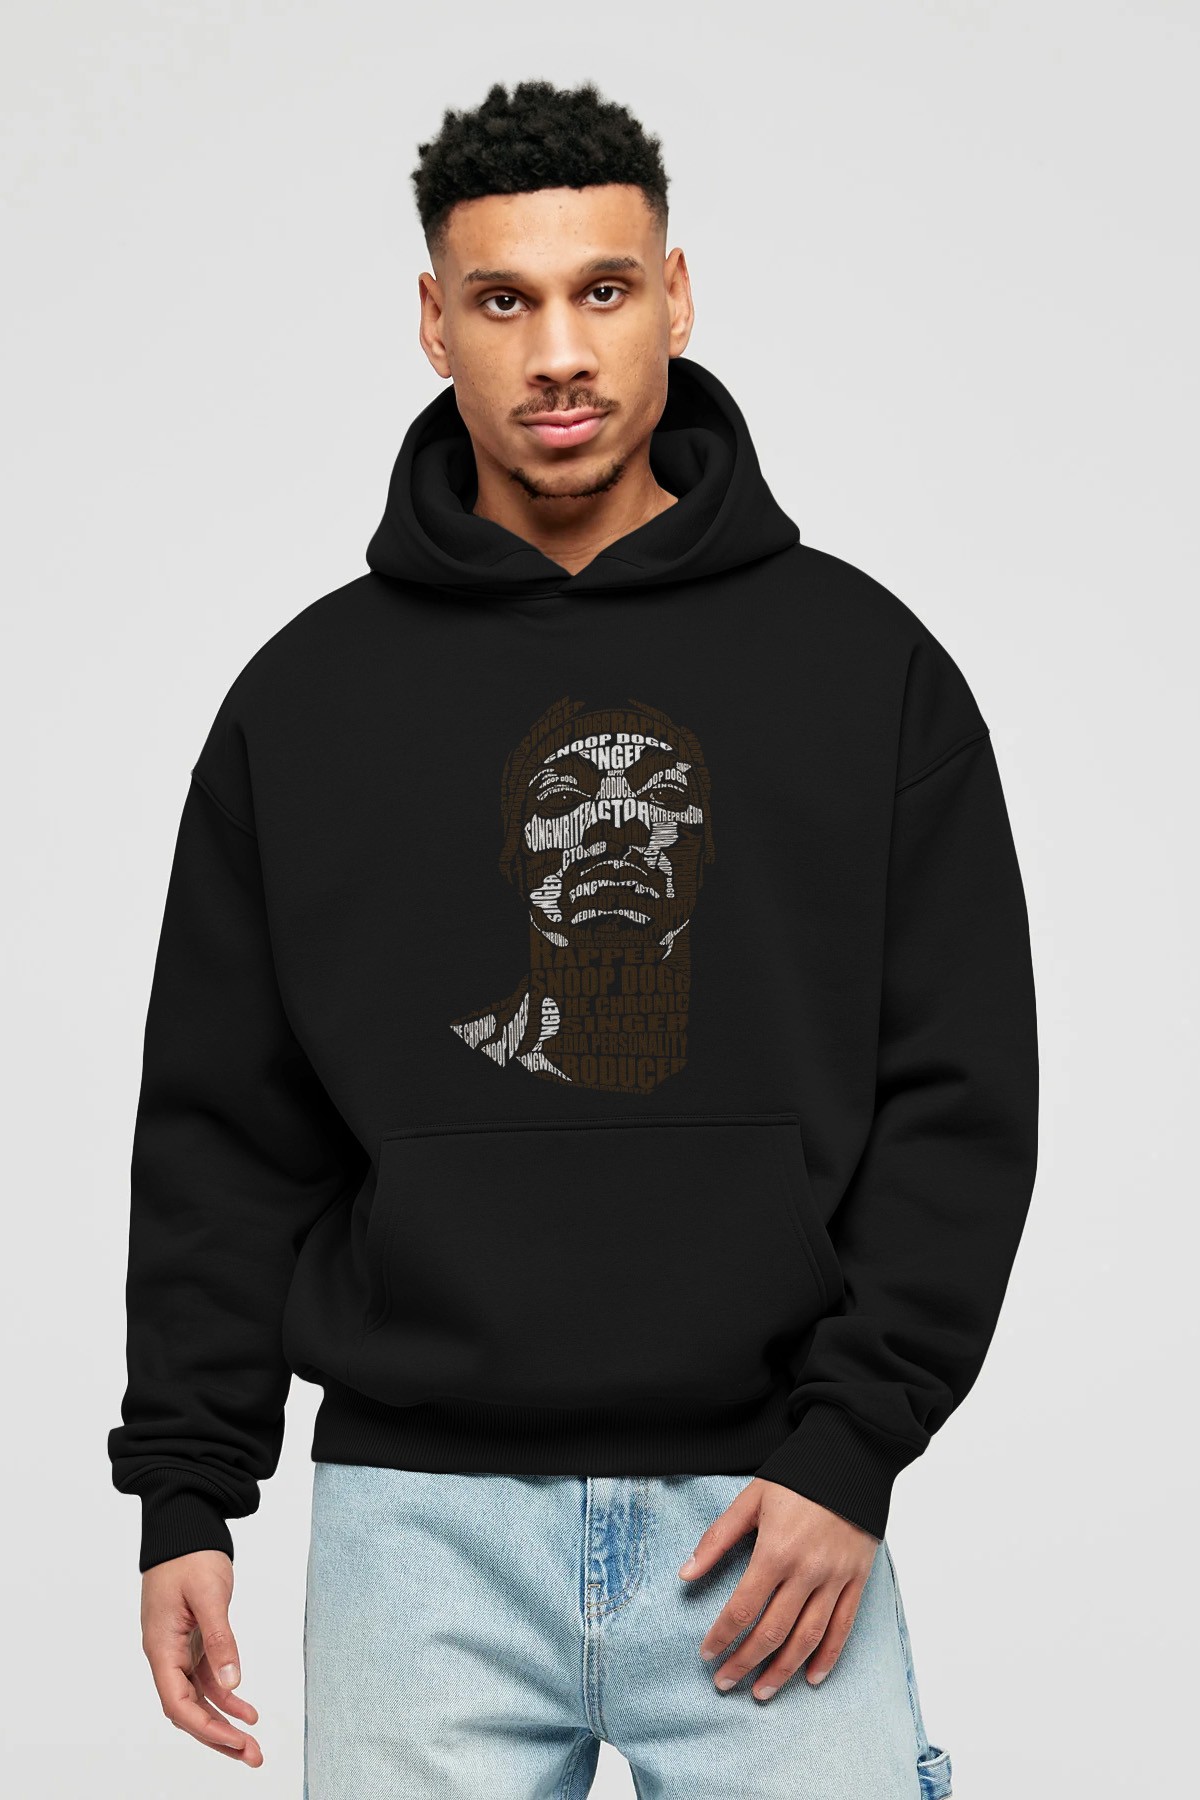 Snoop Dogg Calligram Ön Baskılı Hoodie Oversize Kapüşonlu Sweatshirt Erkek Kadın Unisex